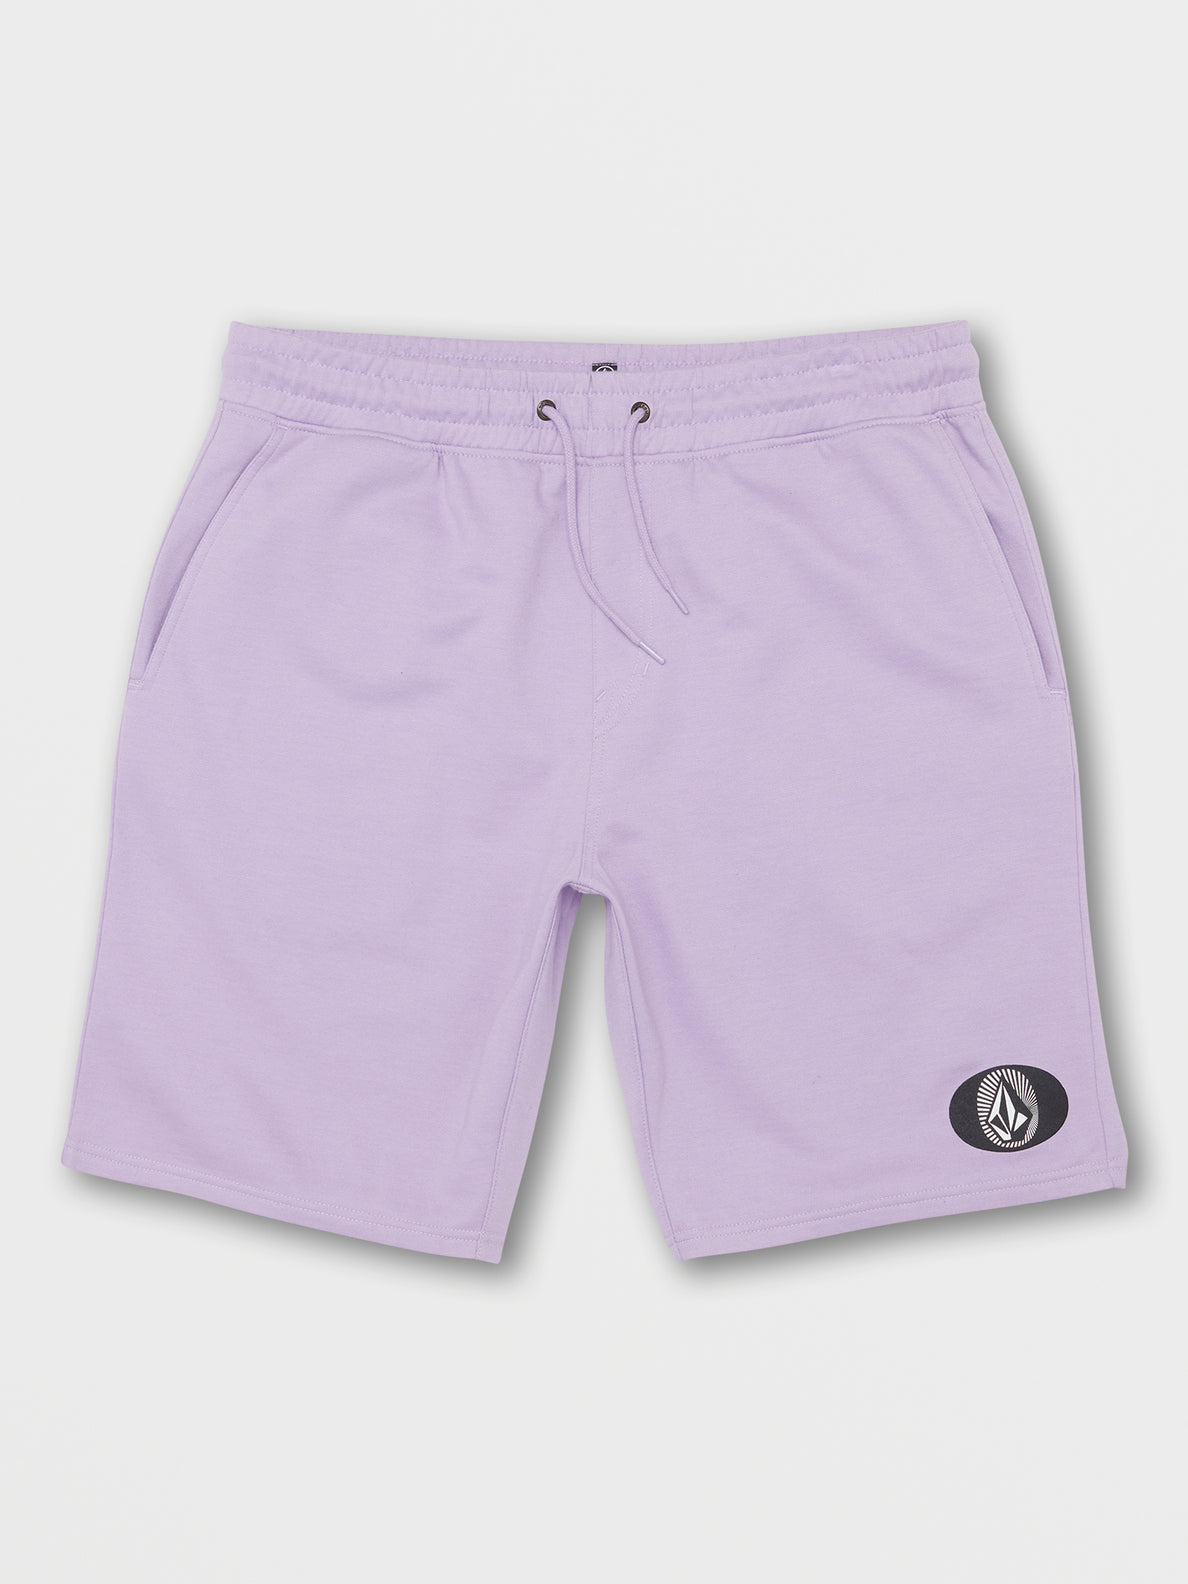 Roundabout Fleece Shorts - Lavender